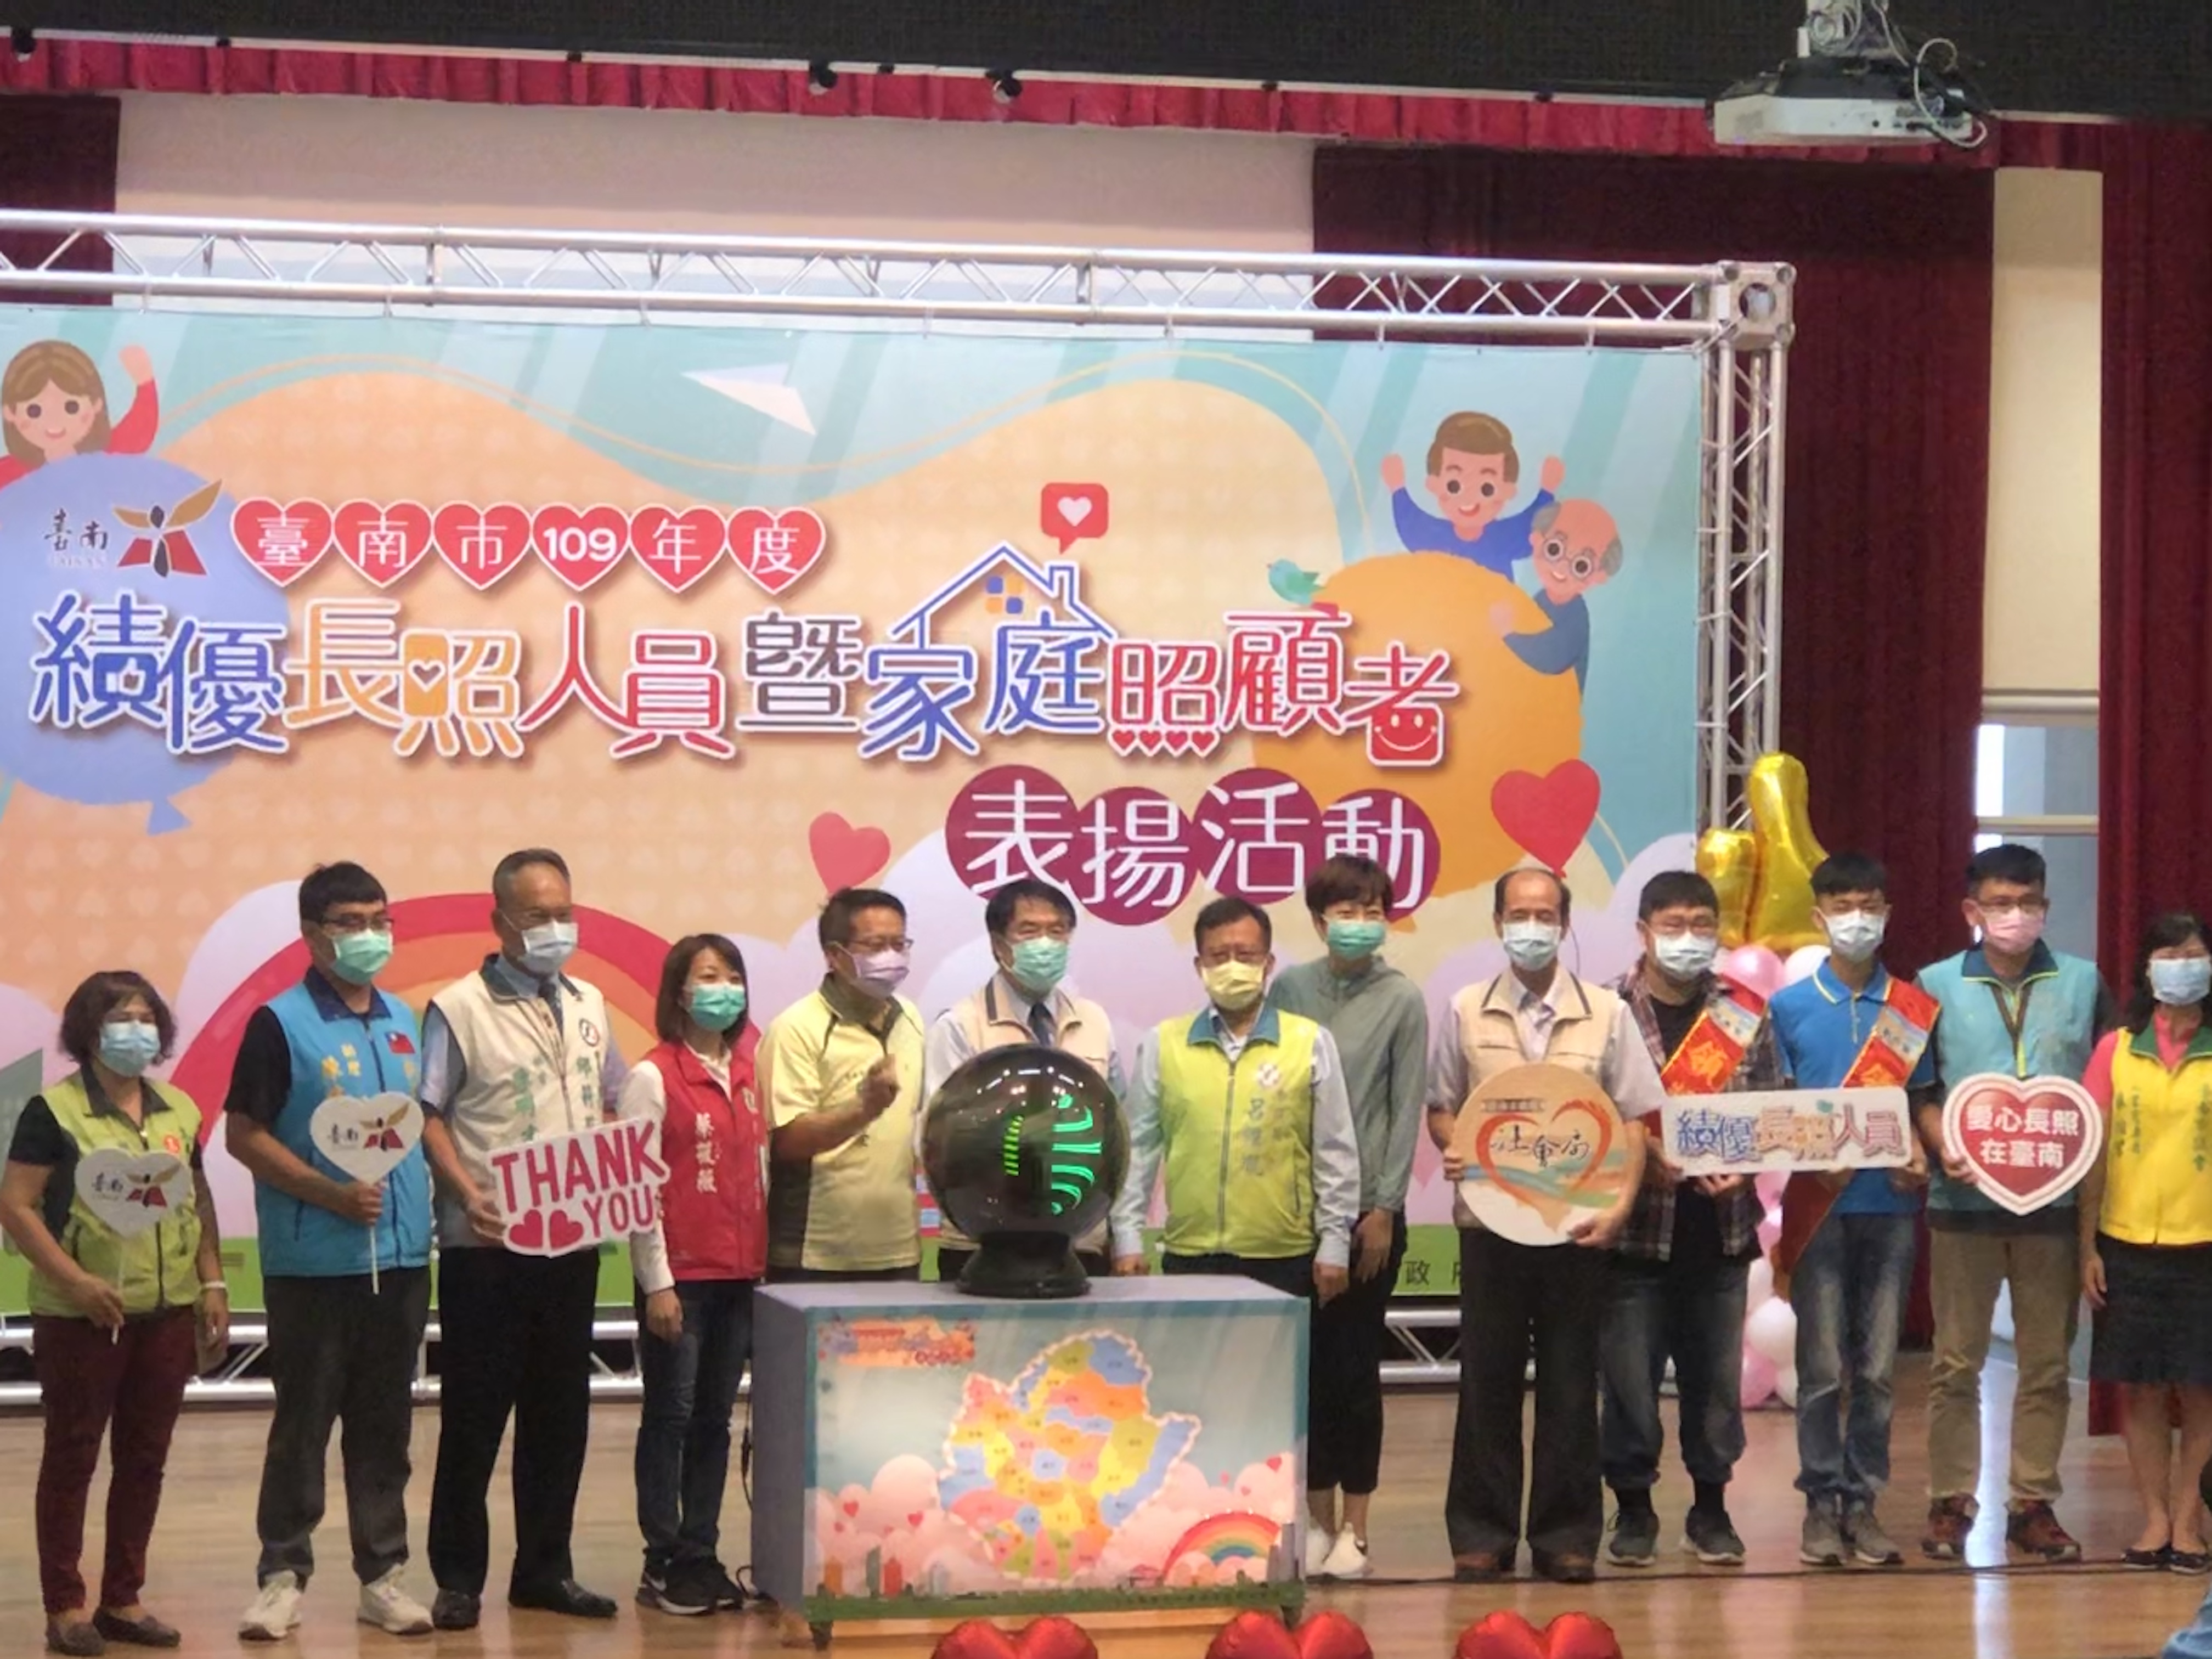 黃偉哲市長出席「臺南市109年度績優長照人員暨家庭照顧者表揚」活動